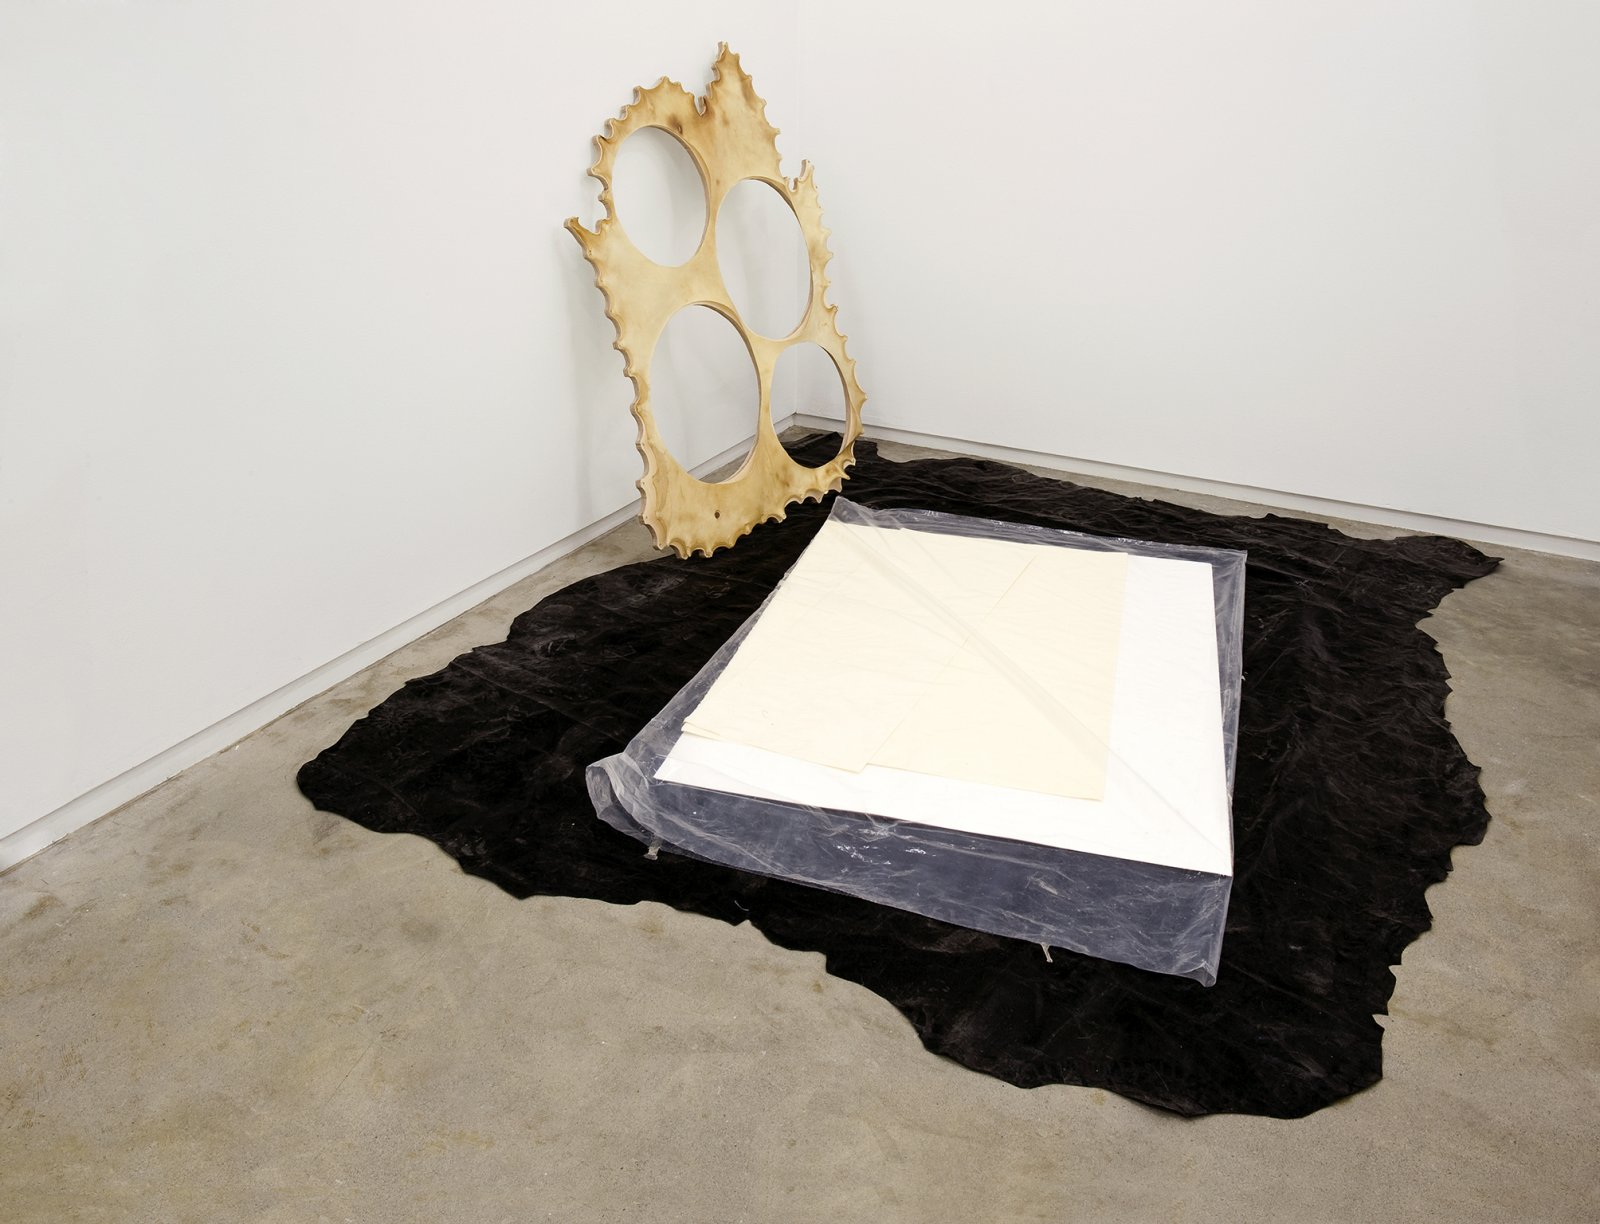 Brian Jungen, installation view, Catriona Jeffries, 2010  by Brian Jungen